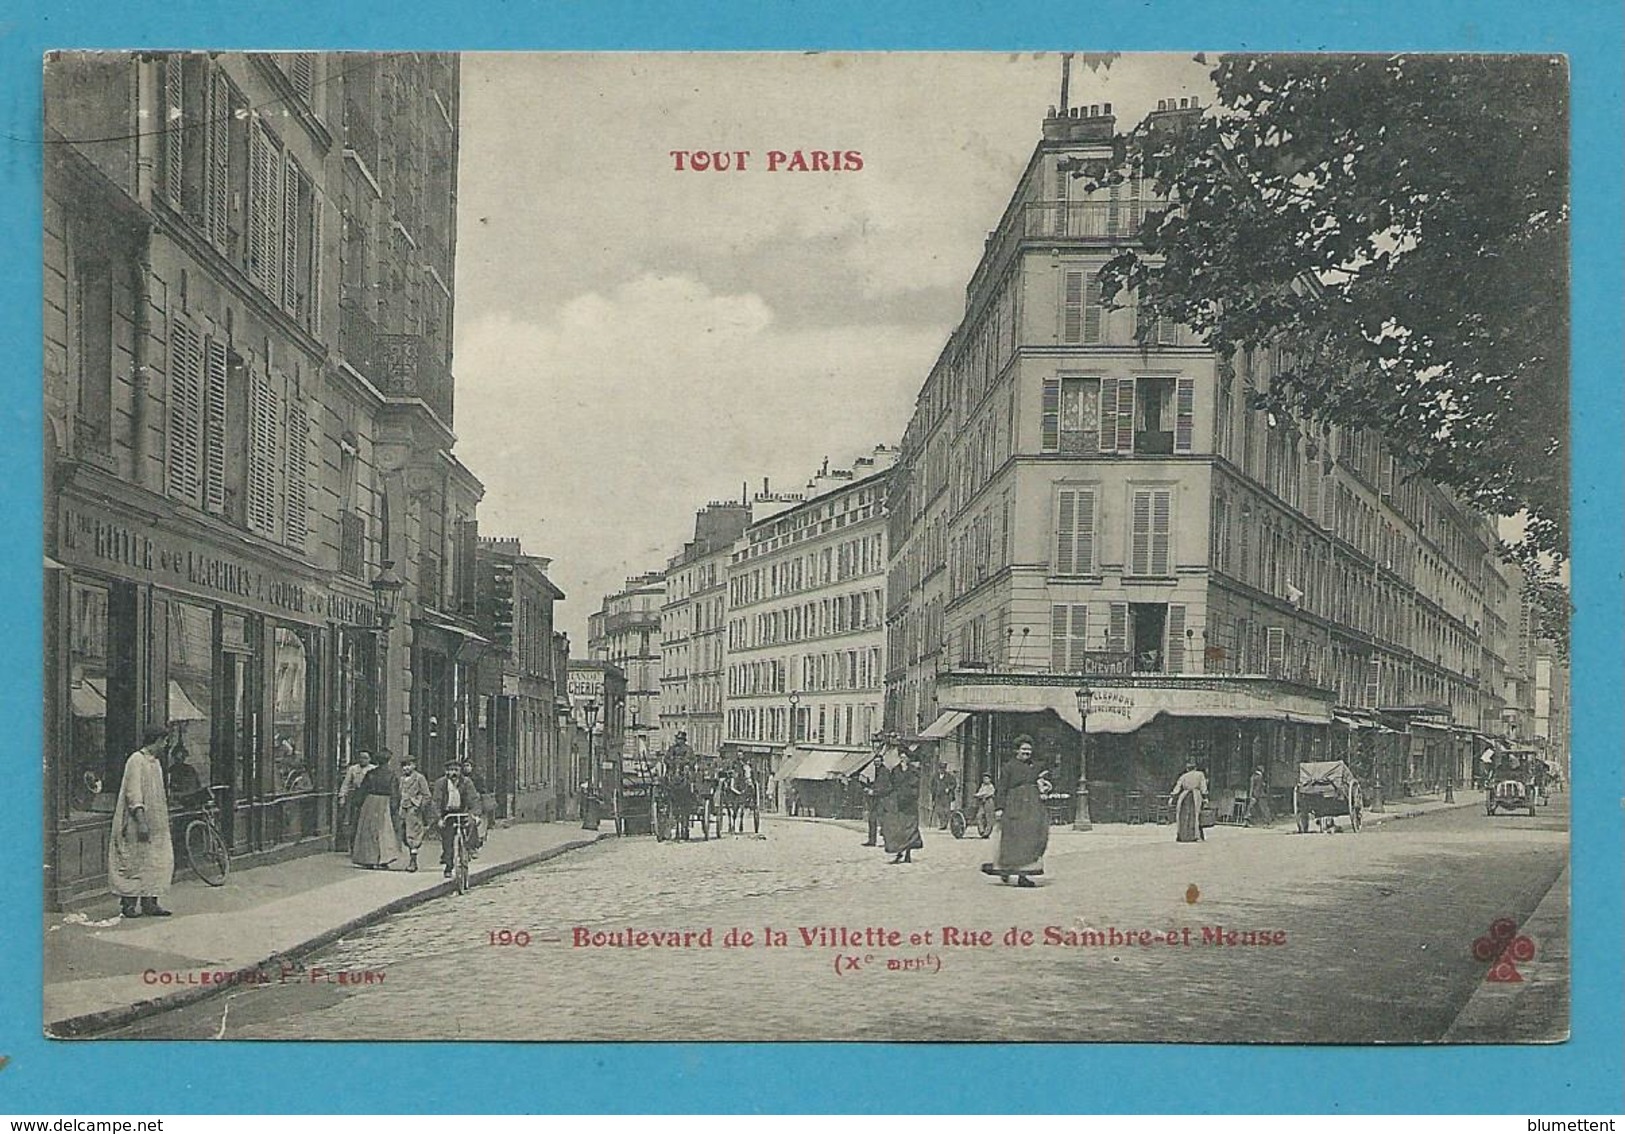 CPA TOUT PARIS 190 - Boulevard De La Villette Et Rue De Sambre-et-Meuse (Xème Arrt) Ed. FLEURY - Arrondissement: 20